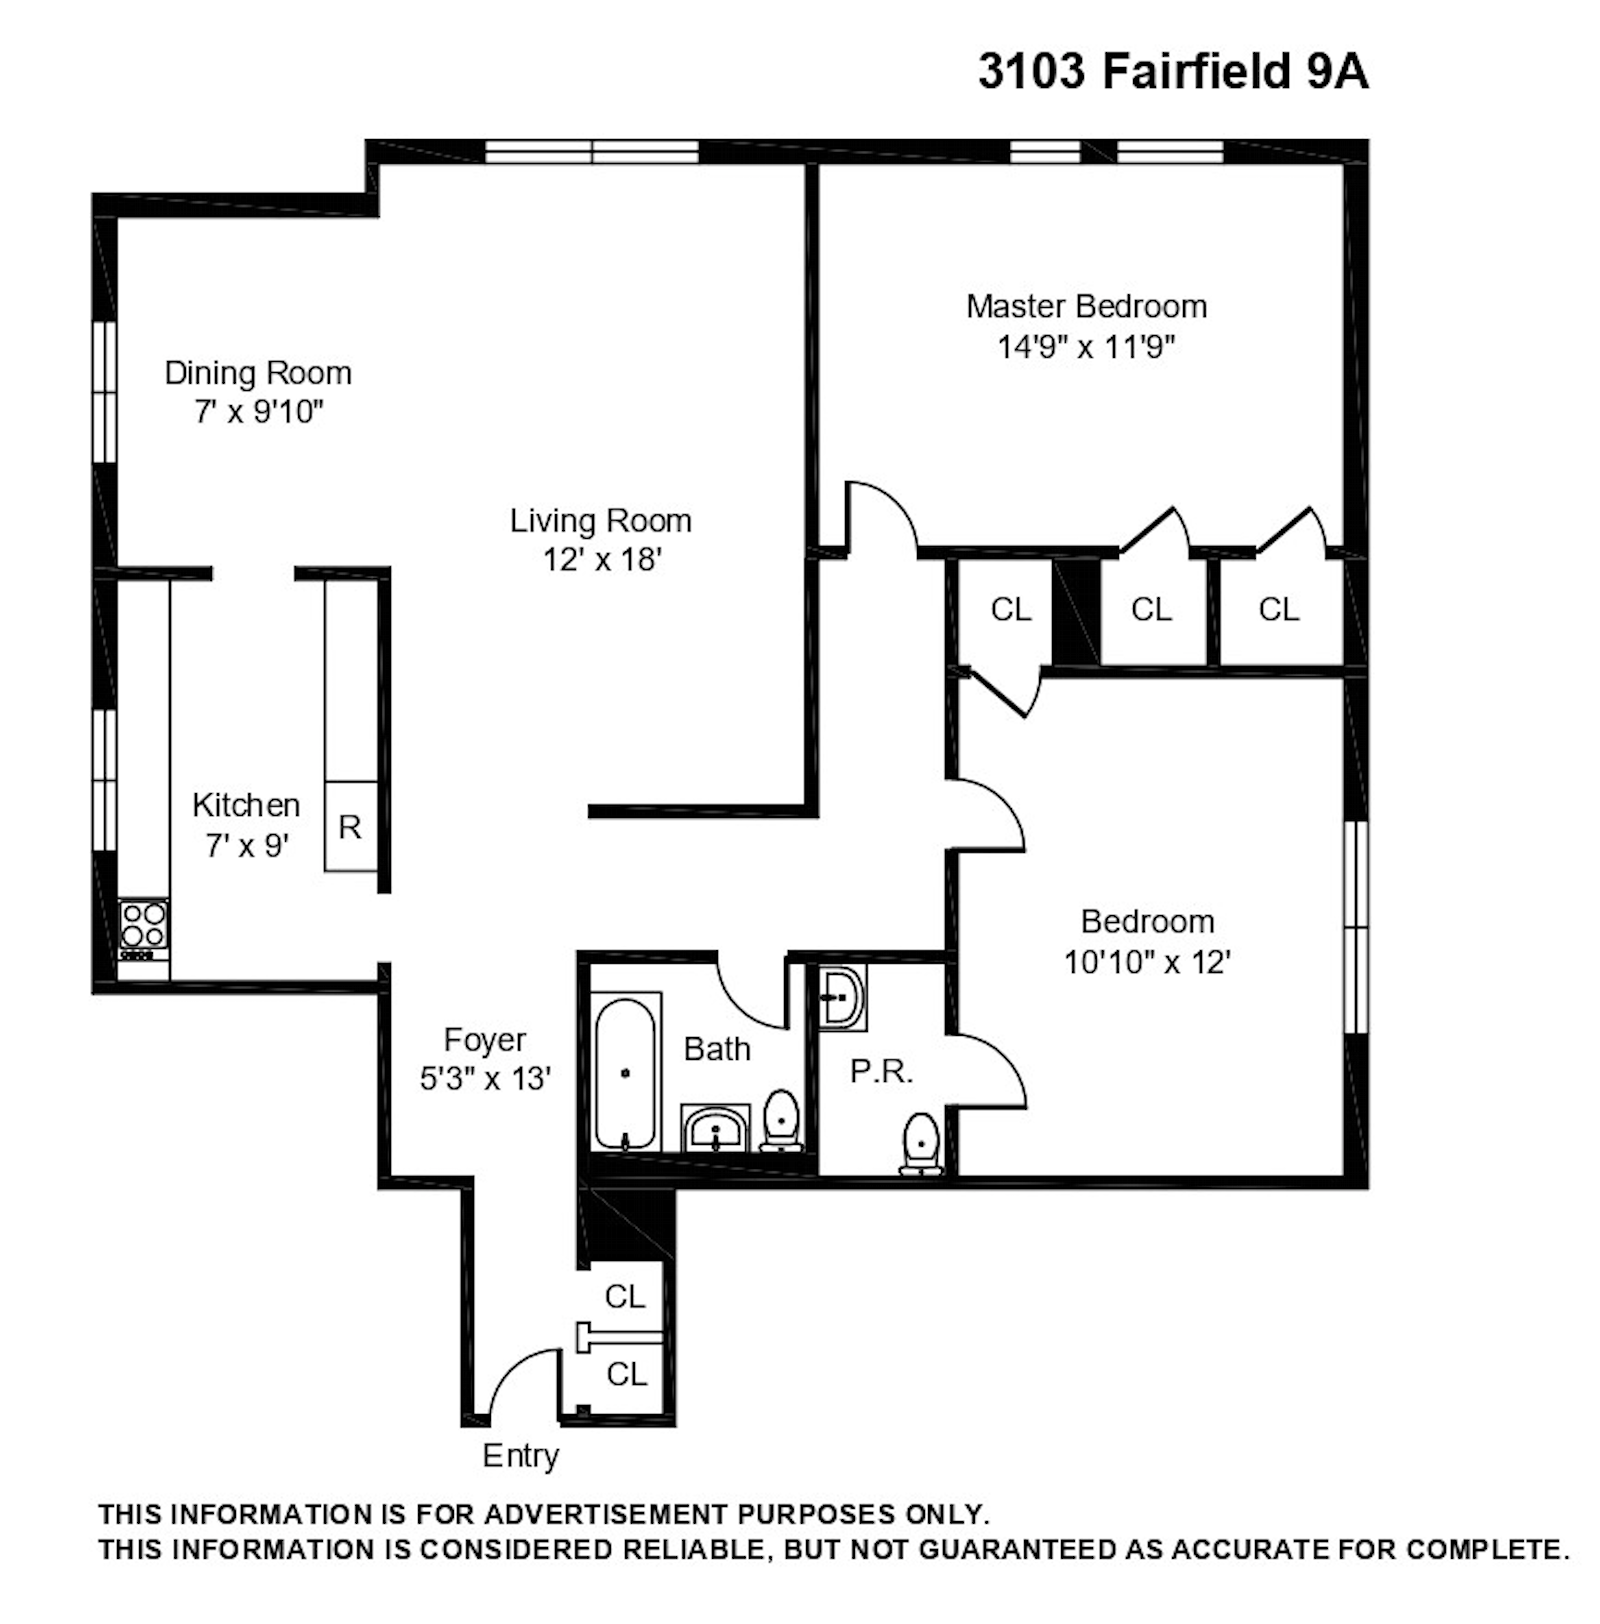 Floorplan for 3103 Fairfield Avenue, 9A